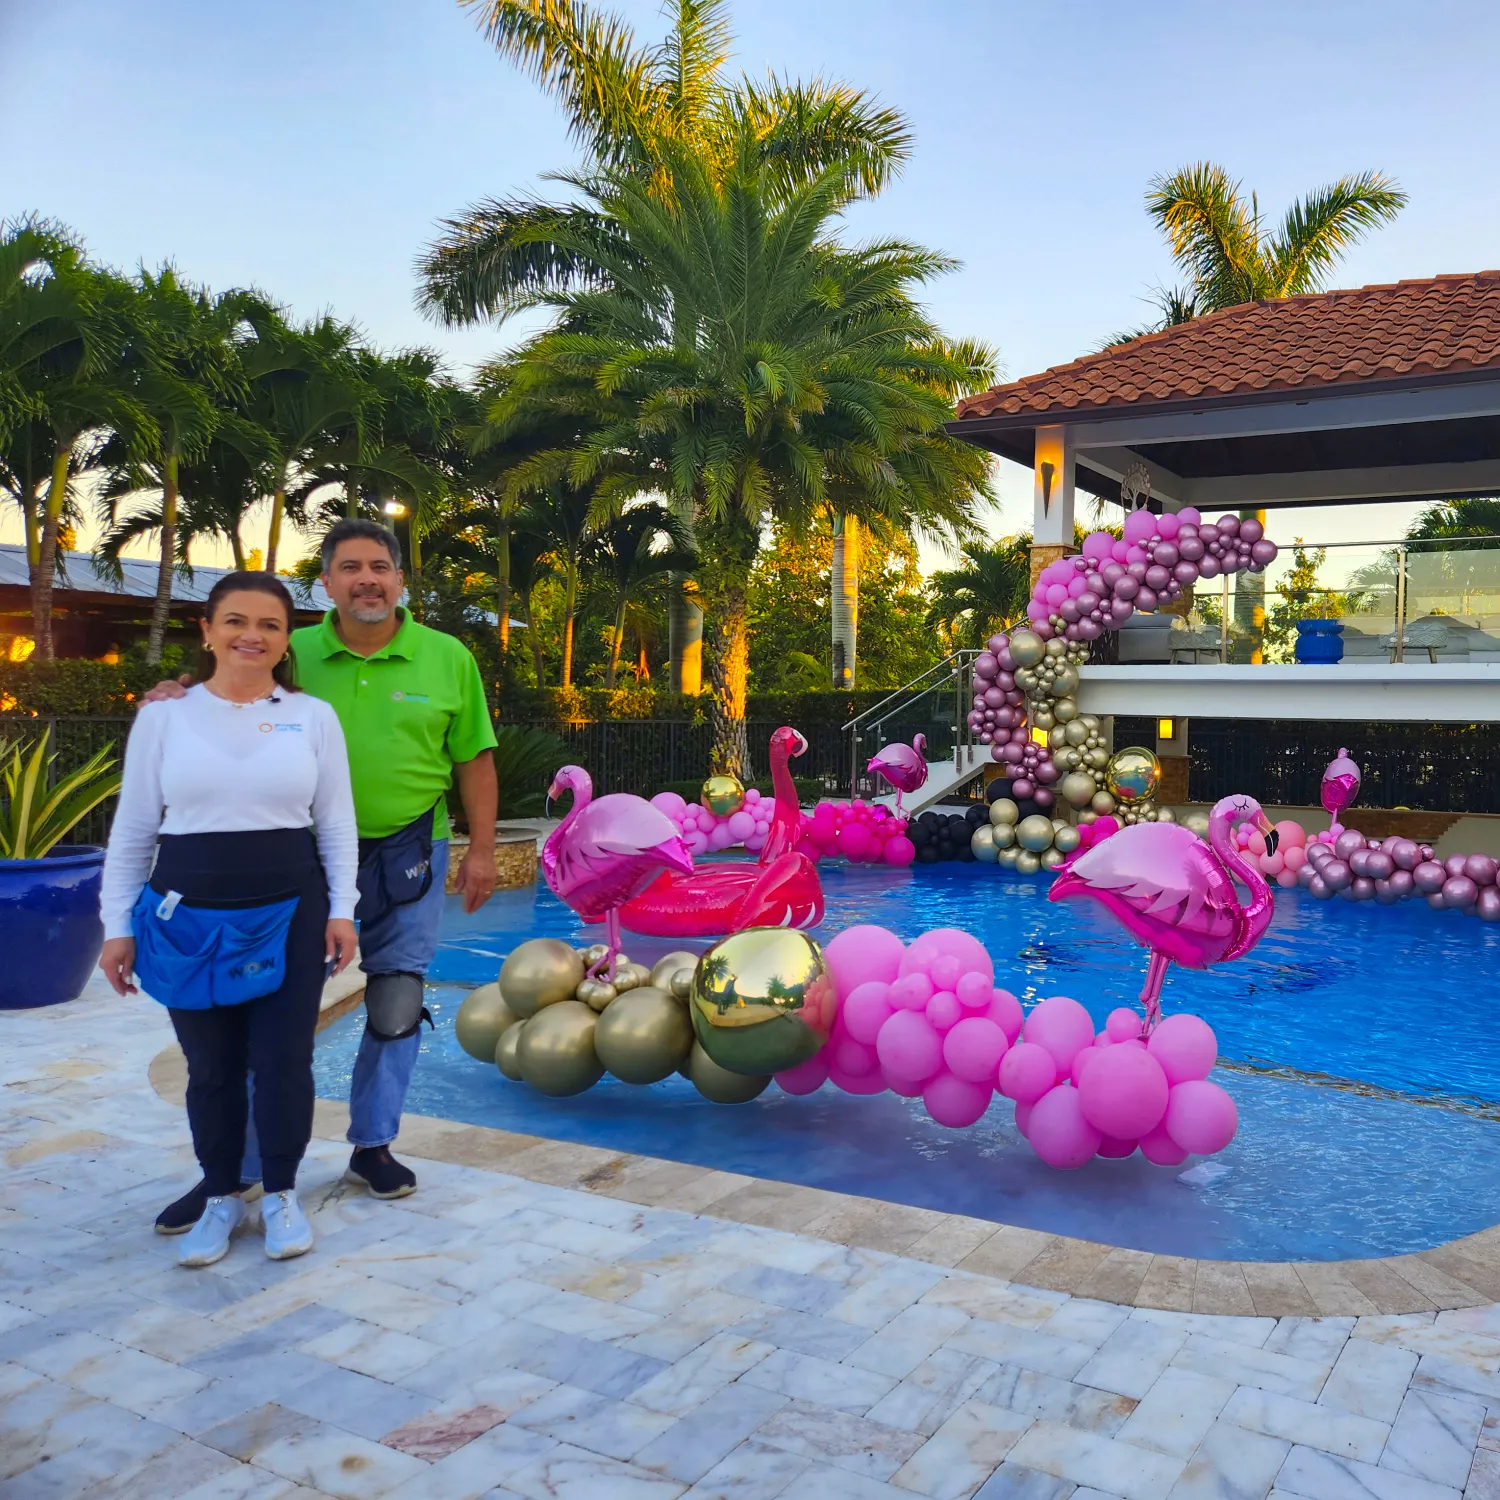 Decoración para fiesta en la piscina fantasía de burbujas y flamingo